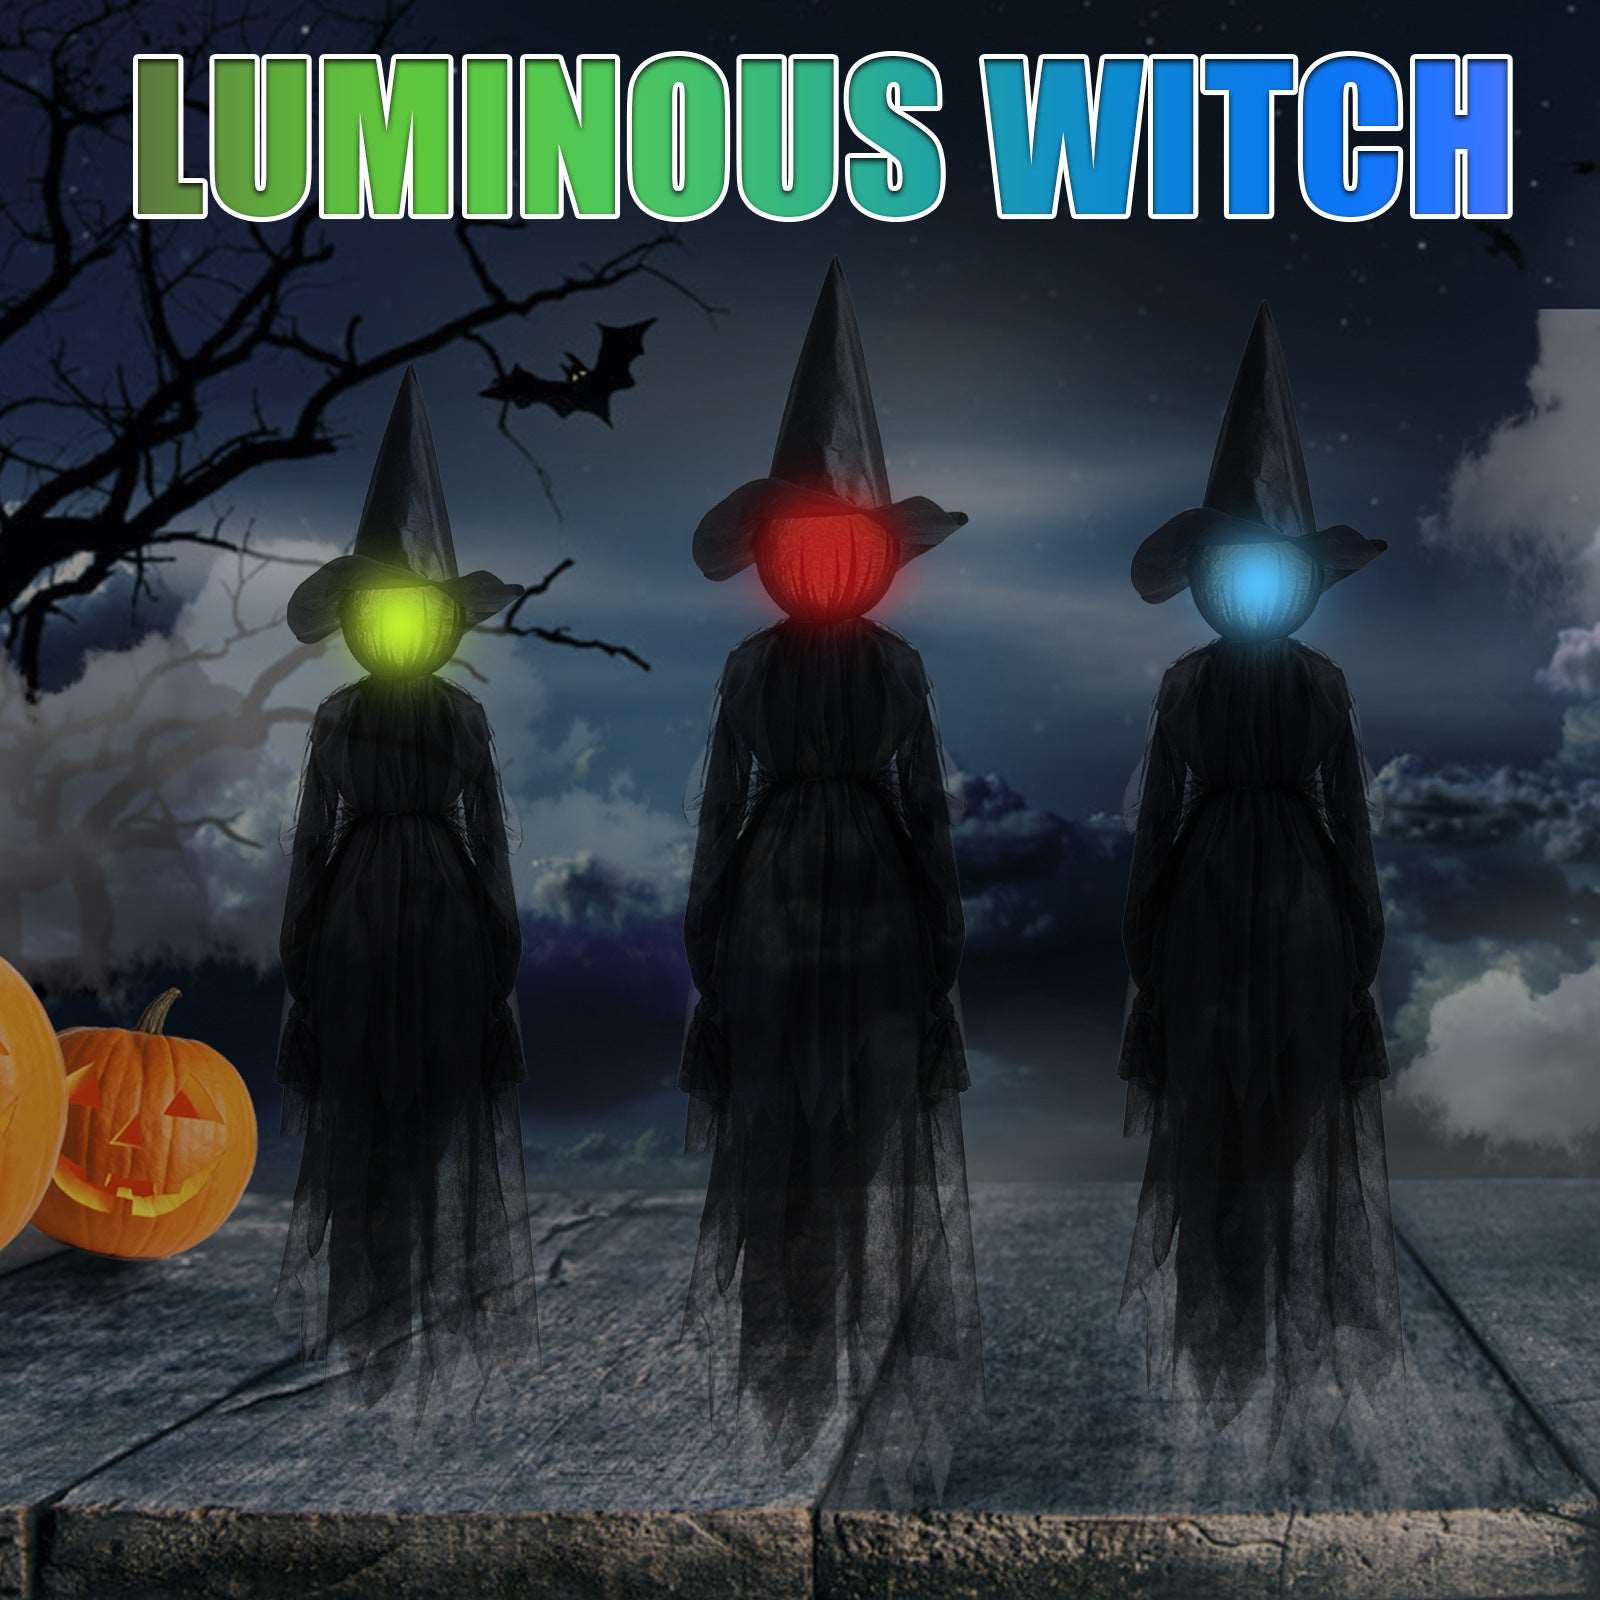 7-color Lighting Scene Props Garden Halloween Decoration, Halloween decoration items, the luminous witch for Halloween